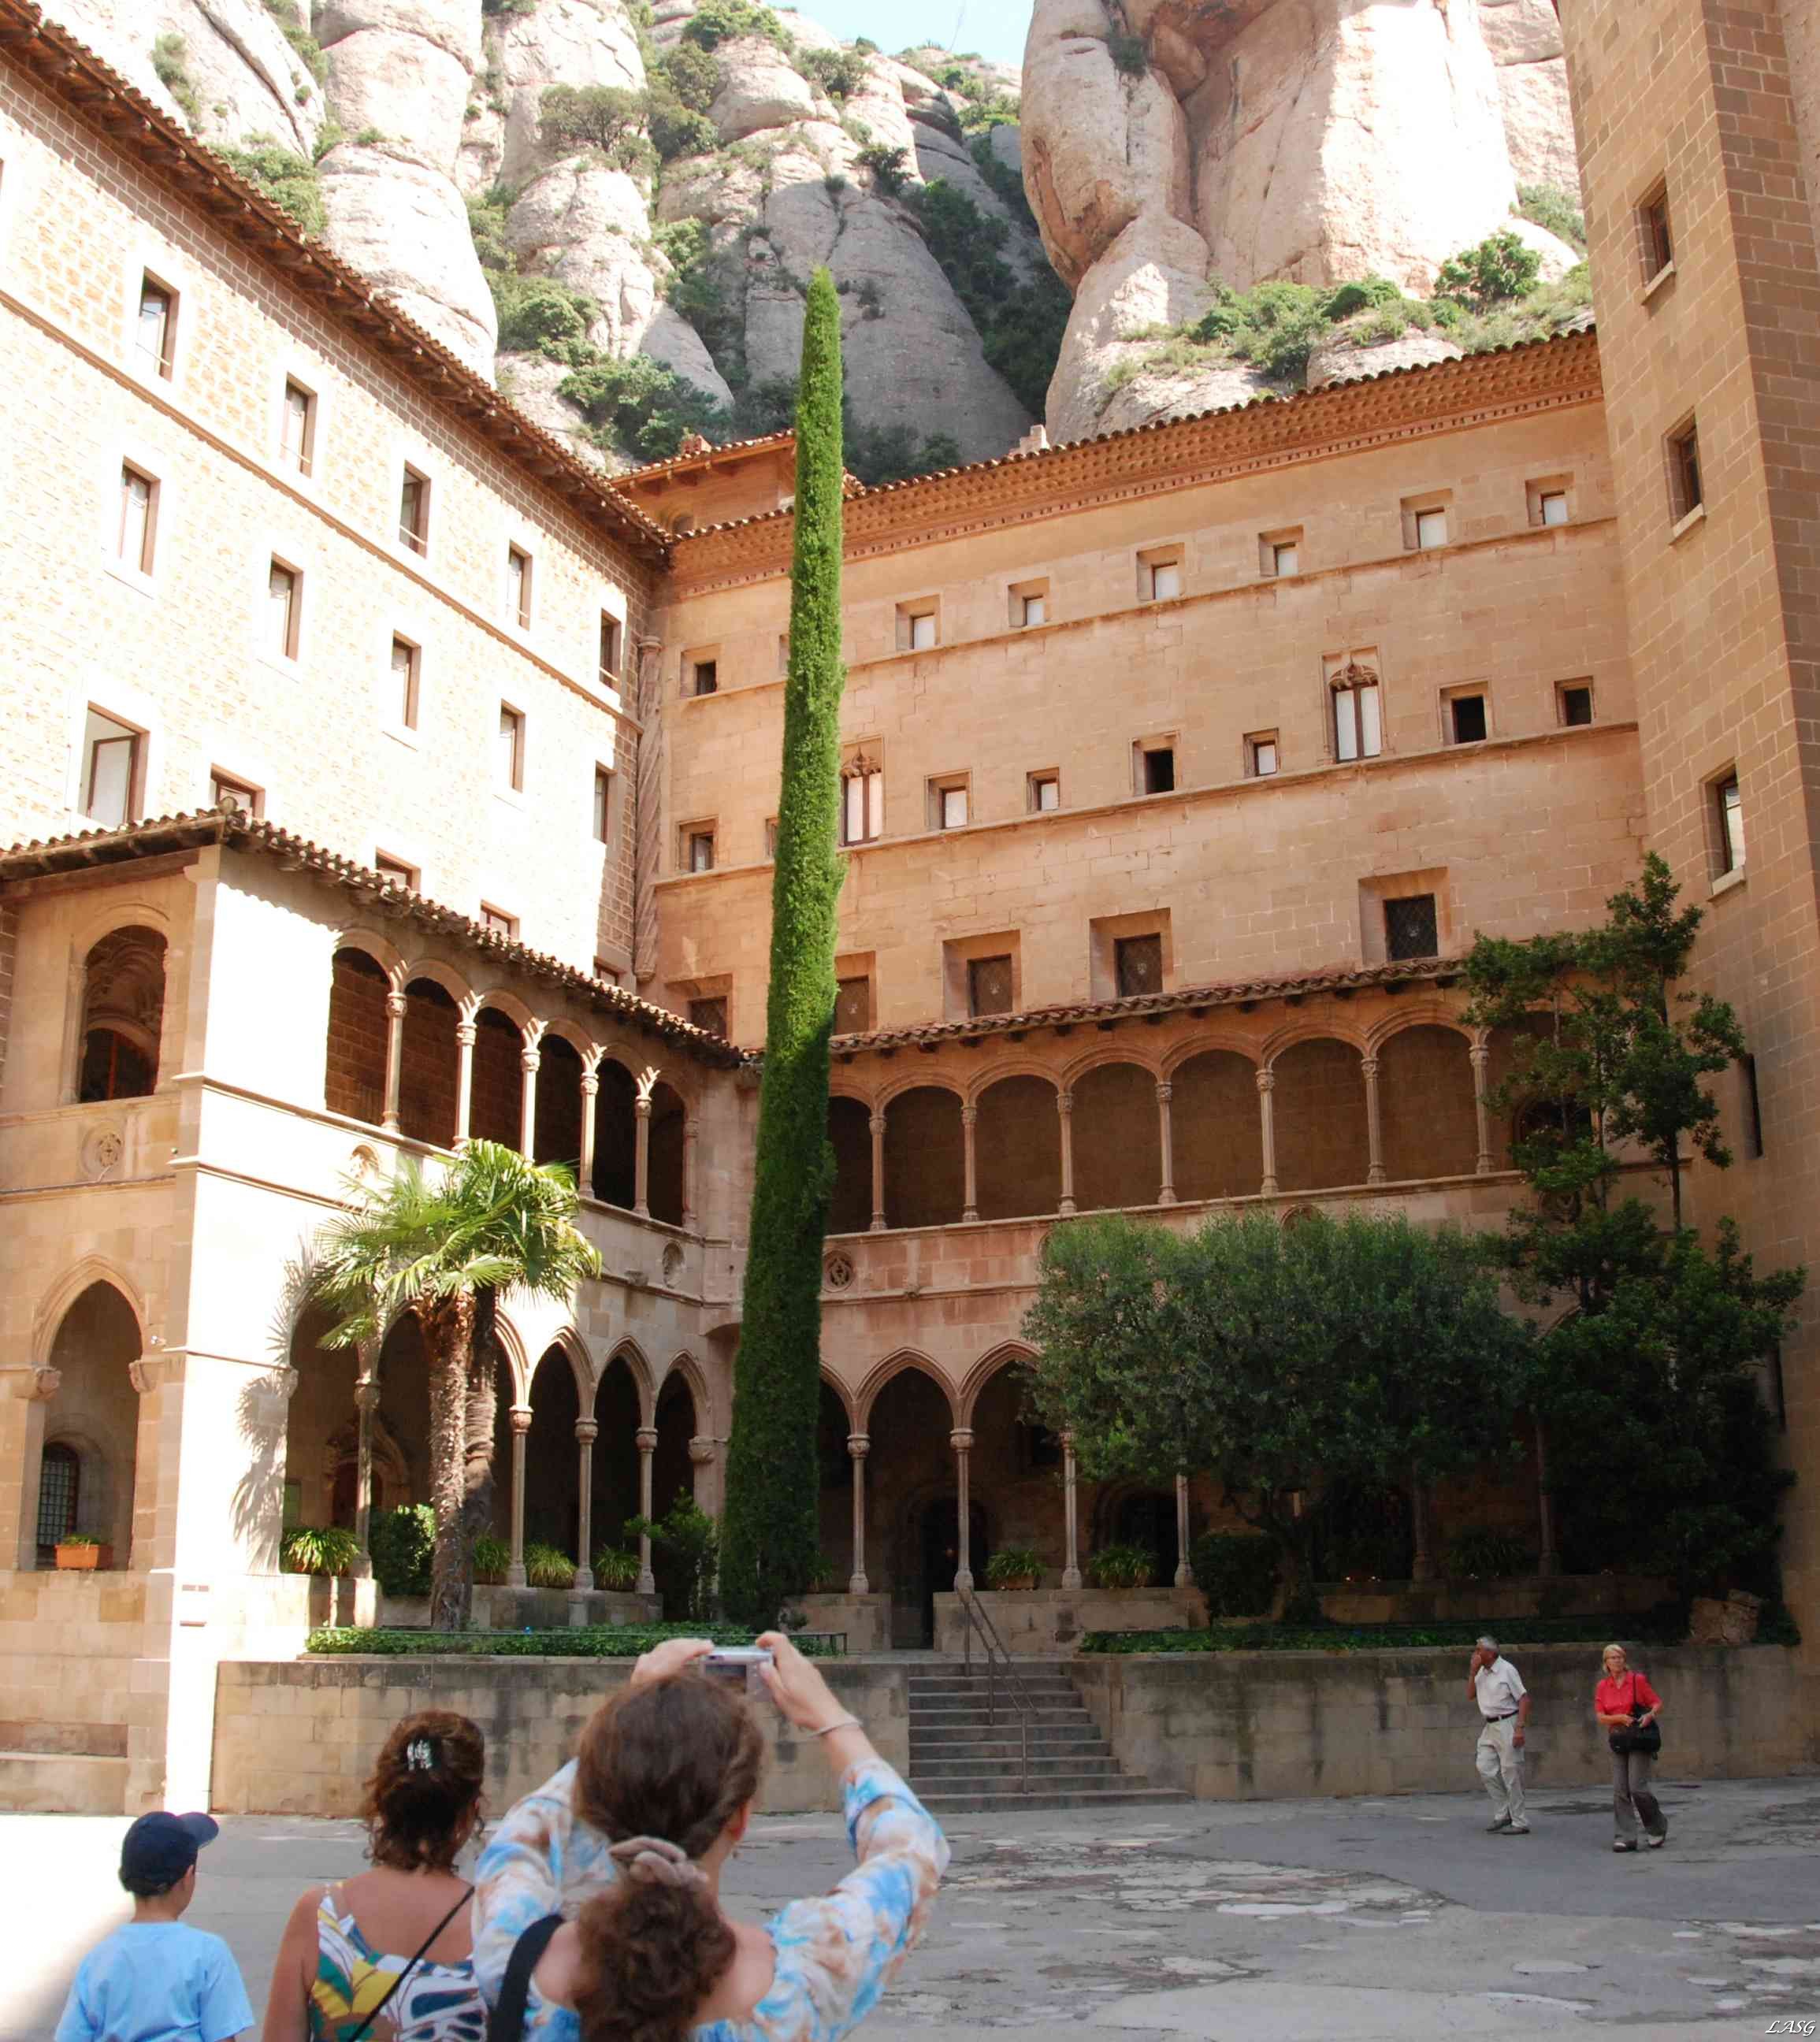 Montserrat - Belső udvara, árkádjai